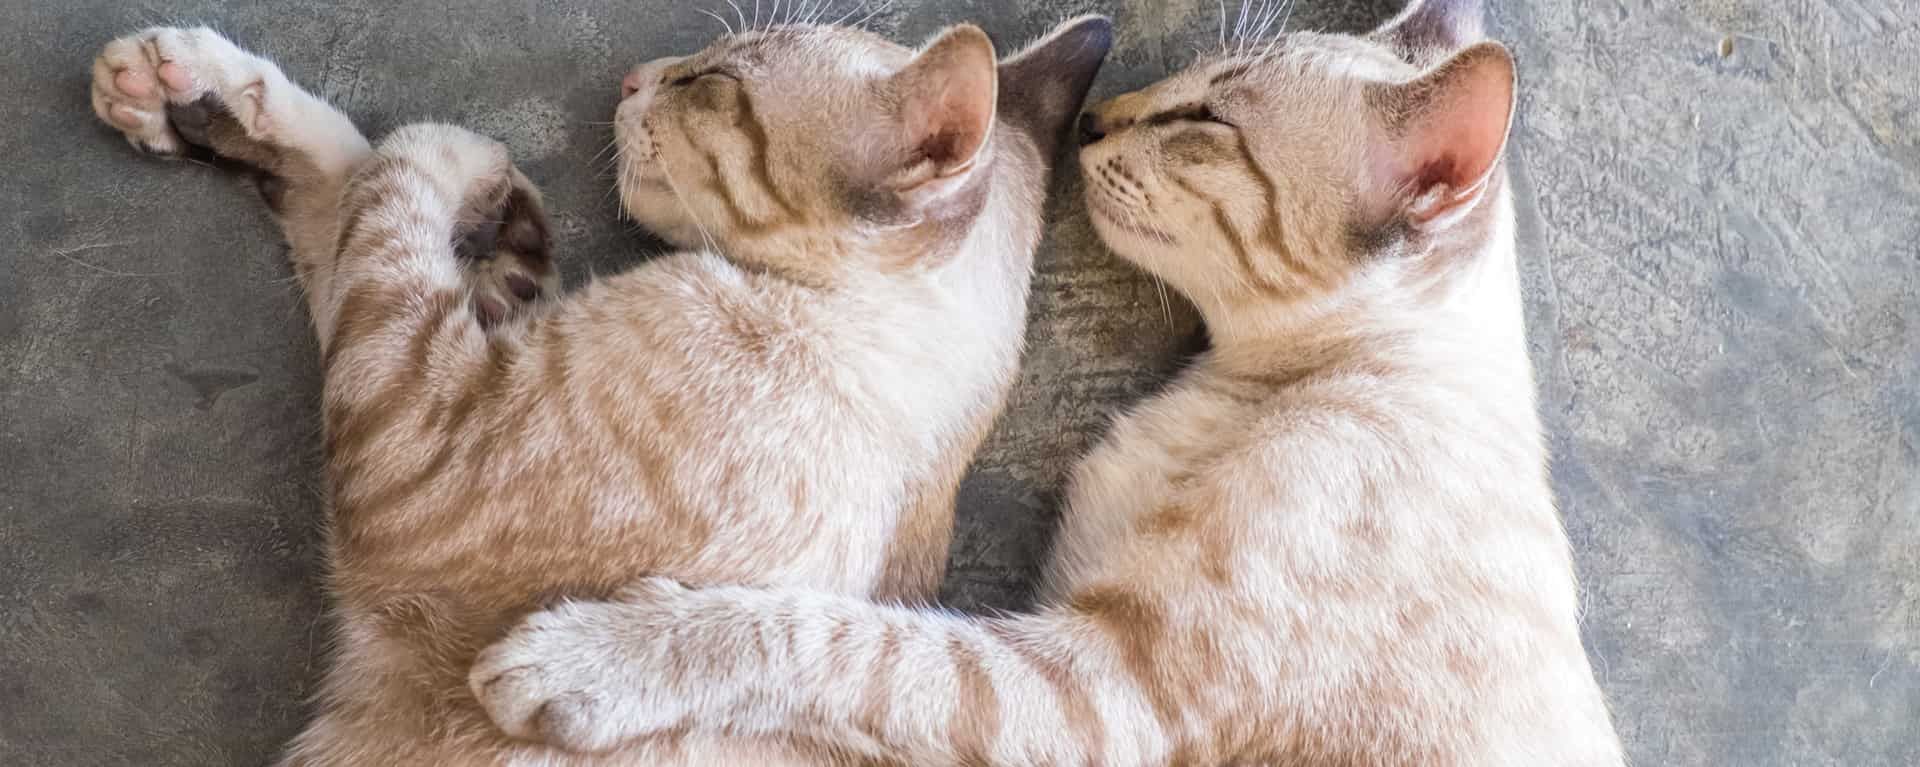 Как проходит вязка кошек, правила и советы заводчику при случке кошки